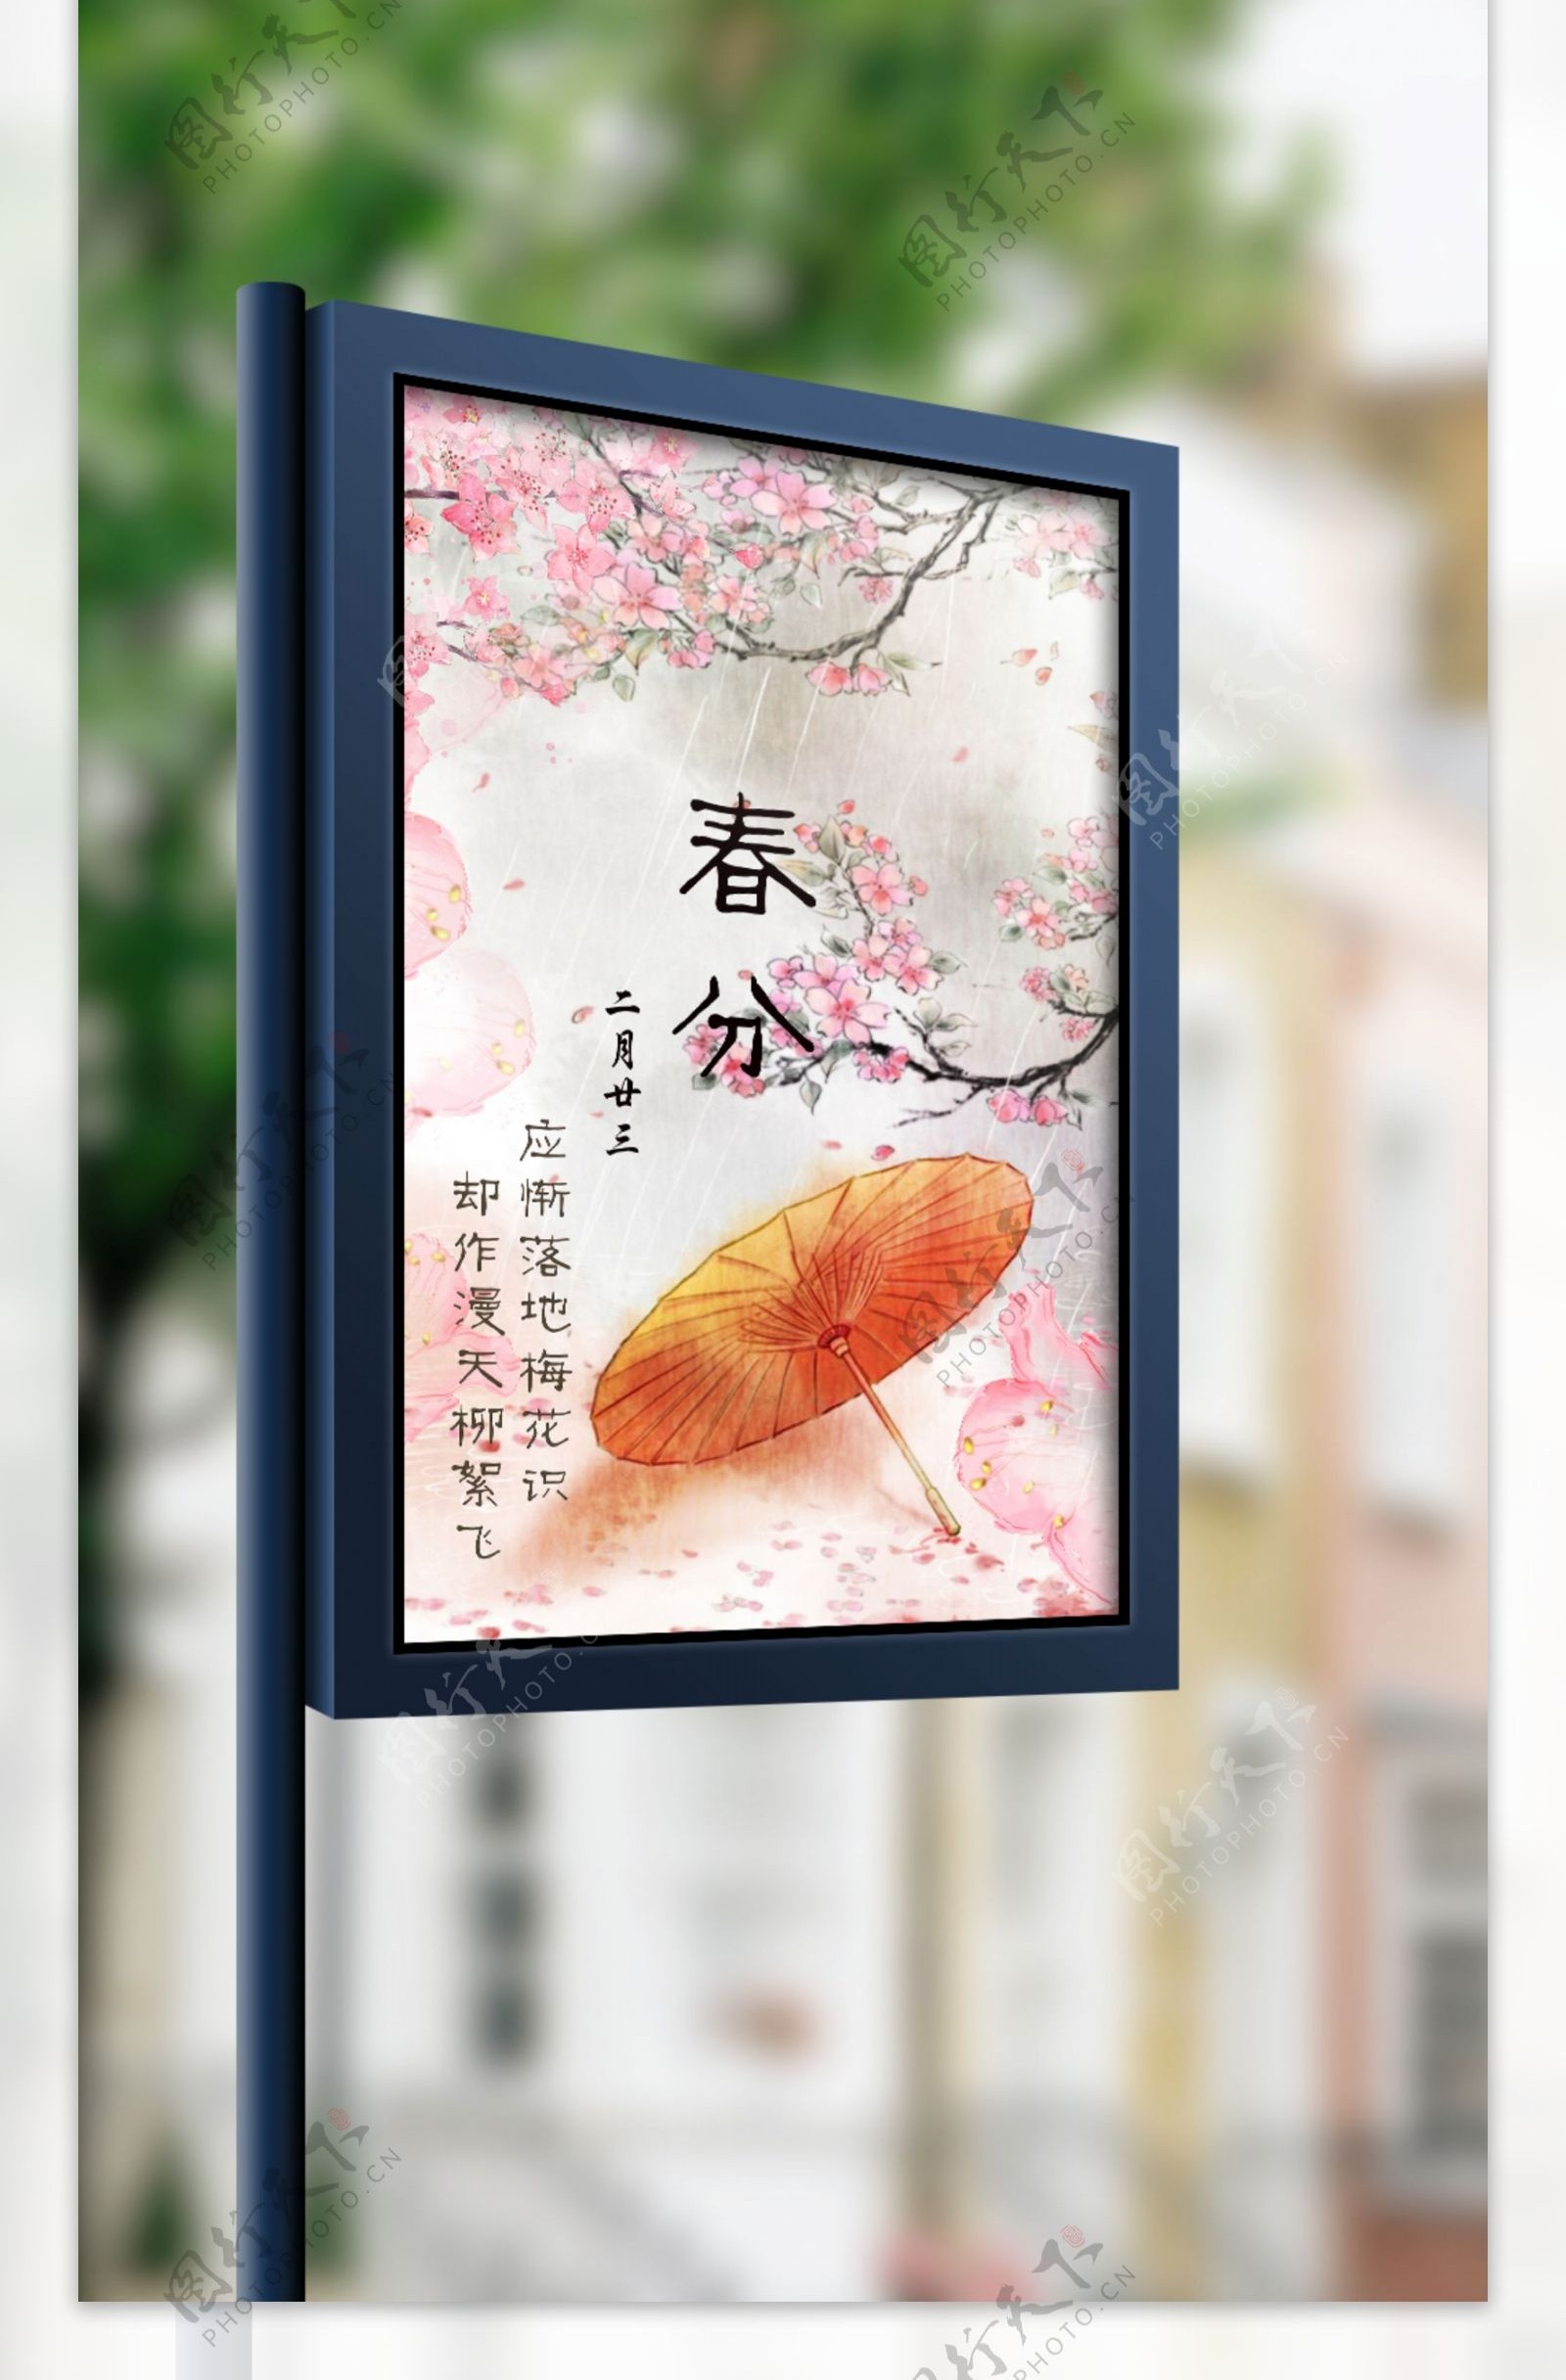 二十四节气之春分桃花主题海报